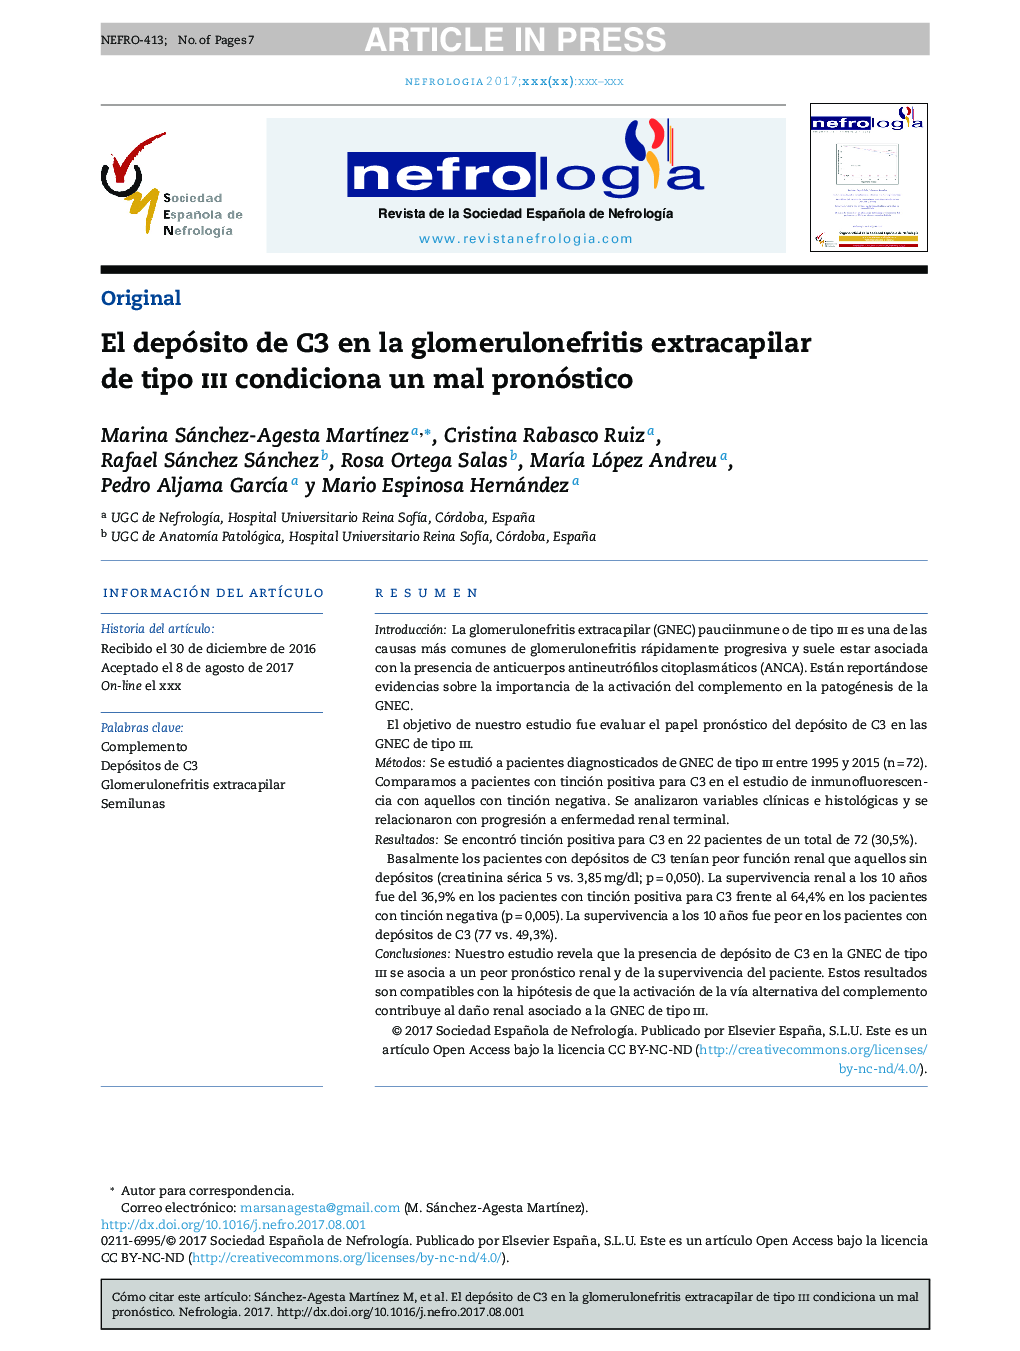 El depósito de C3 en la glomerulonefritis extracapilar de tipo iii condiciona un mal pronóstico